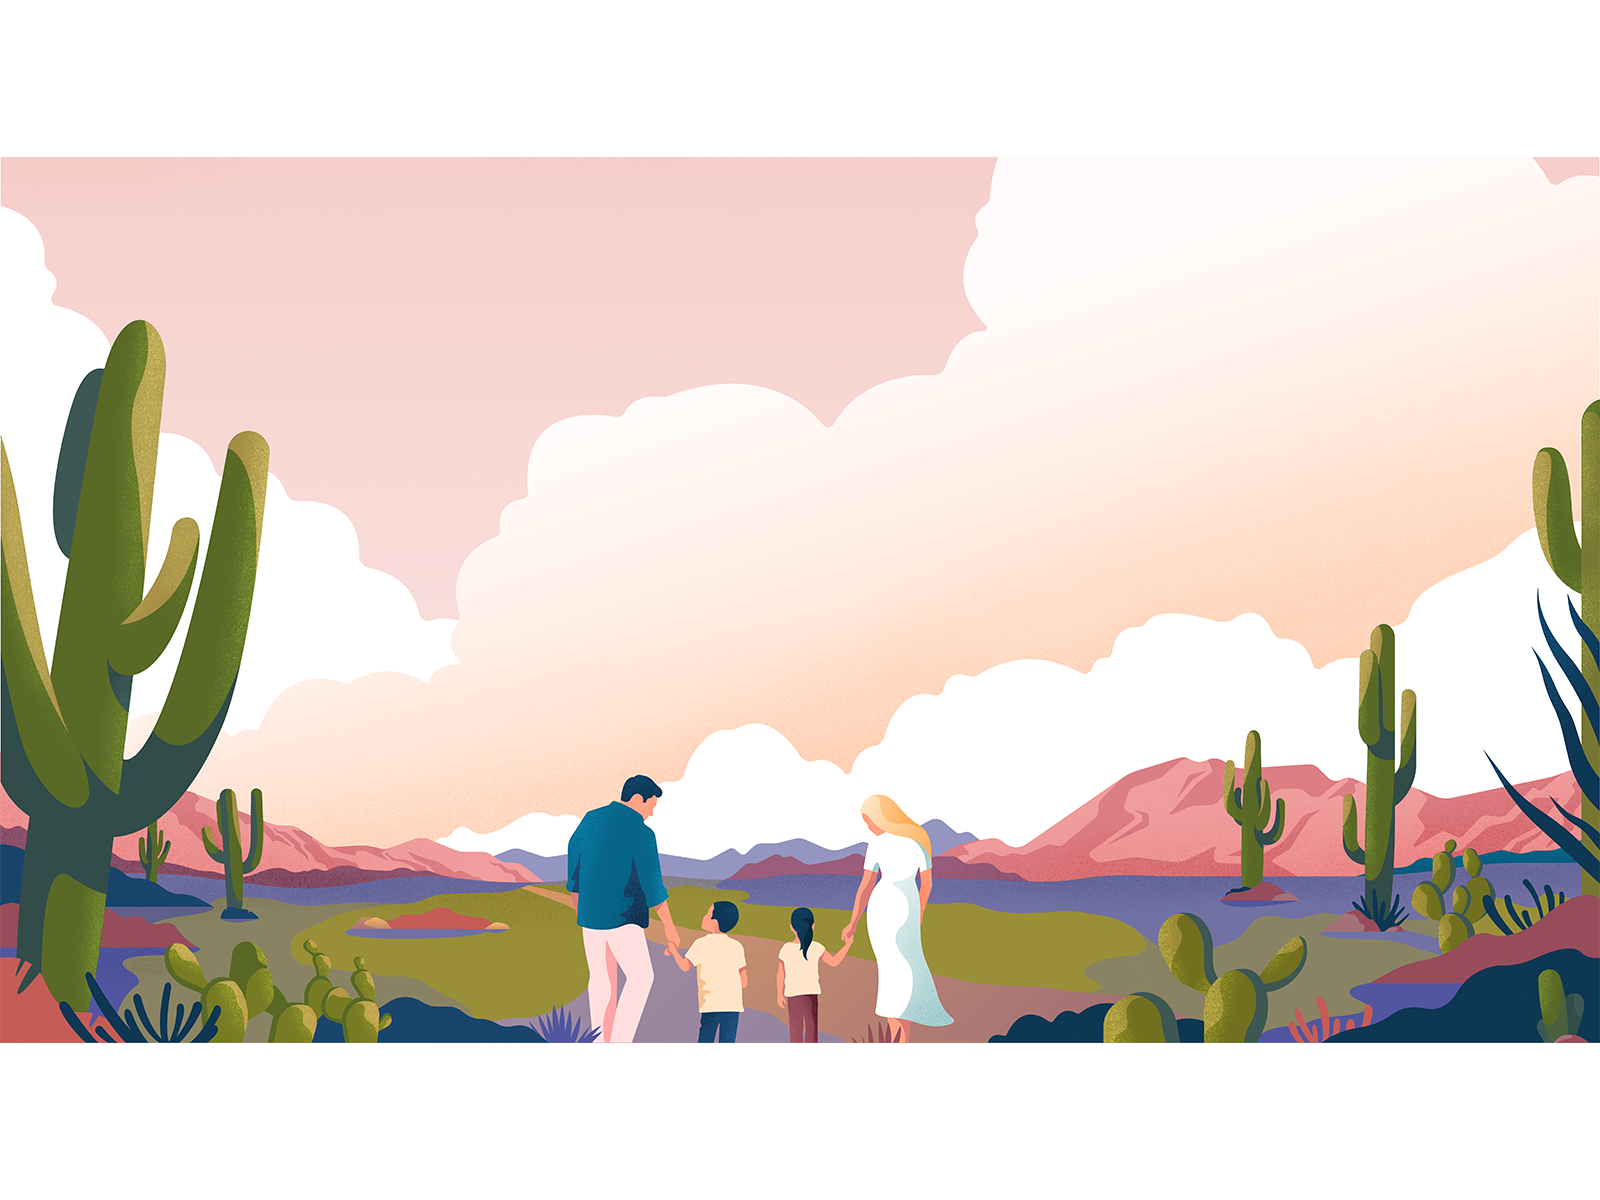 Arizona desert nature family adobeillustator desert arizona noise landscape vector colors illustration